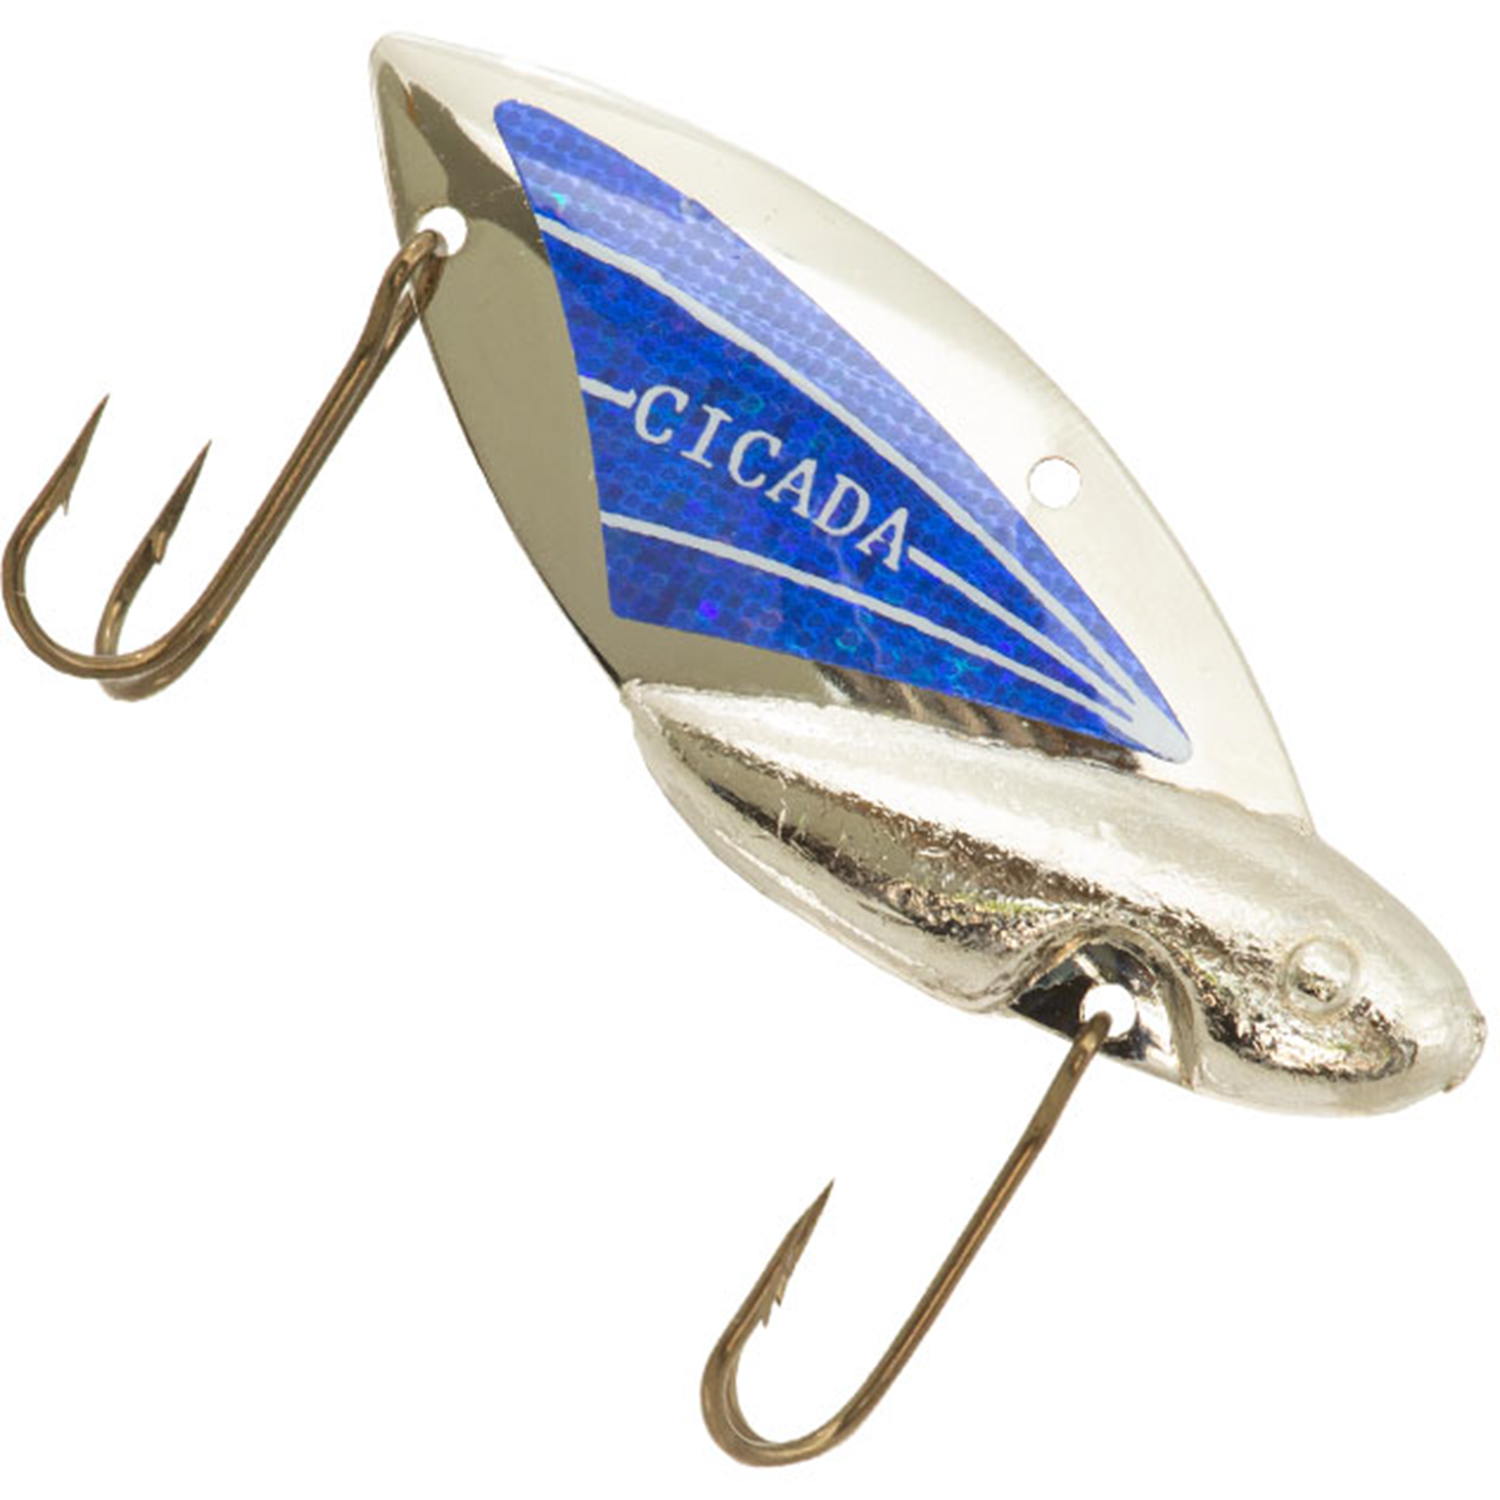 Vintage Reef Runner Cicada, 2/5oz Nickel / Blue fishing spoon #11470